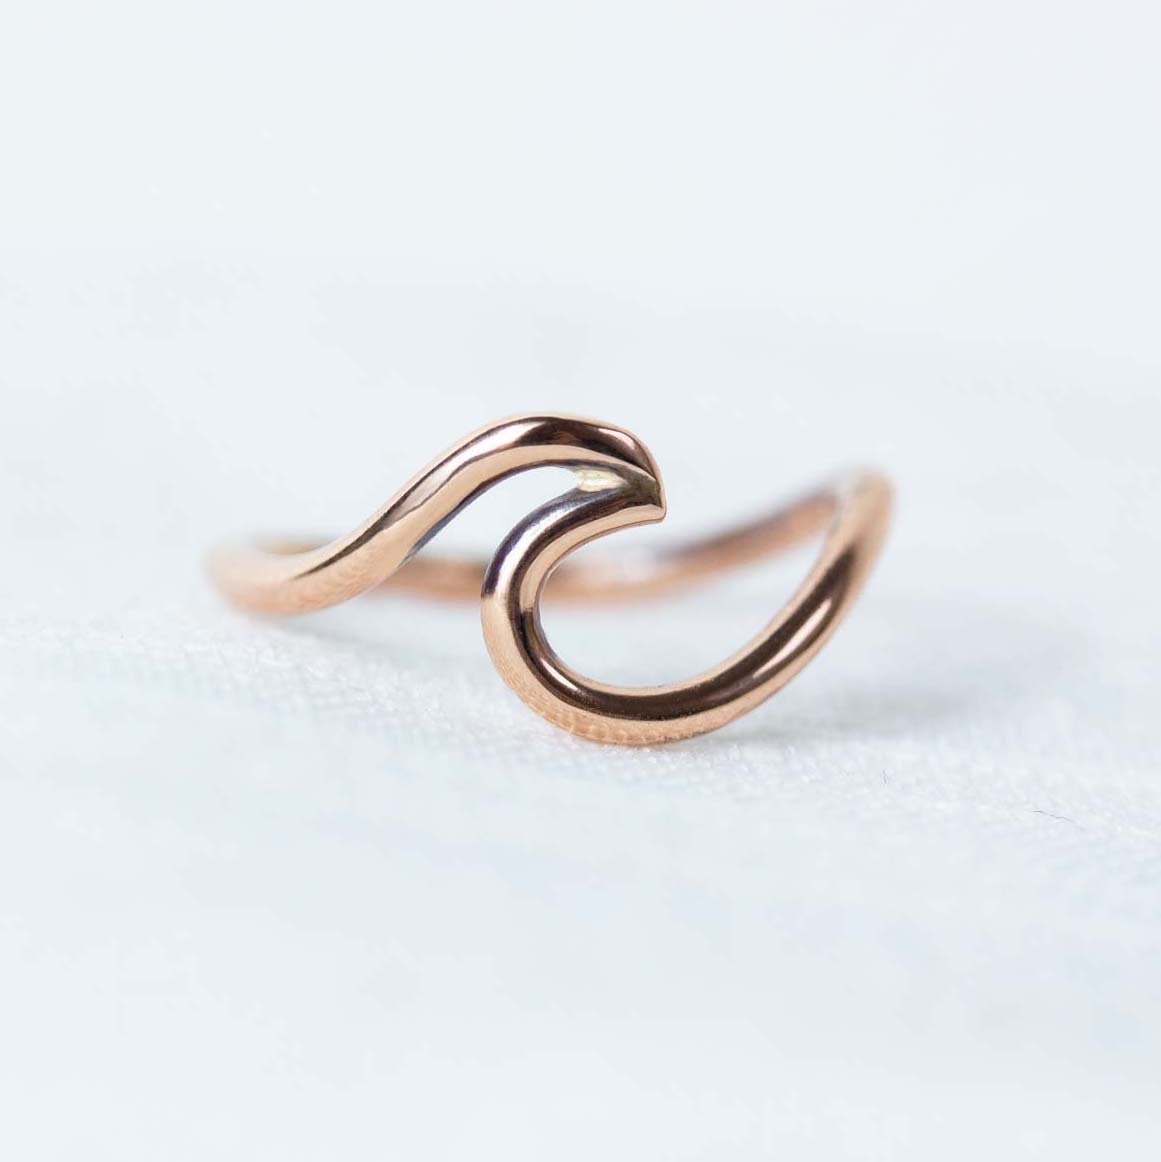 Damen Ring mit Wellen Trendsymbol Strand Maritim in 925 Sterling Silber Wave Ring für Mädchen Damen Verstellbarer Welle Ring Wellenförmiger Fingerring 